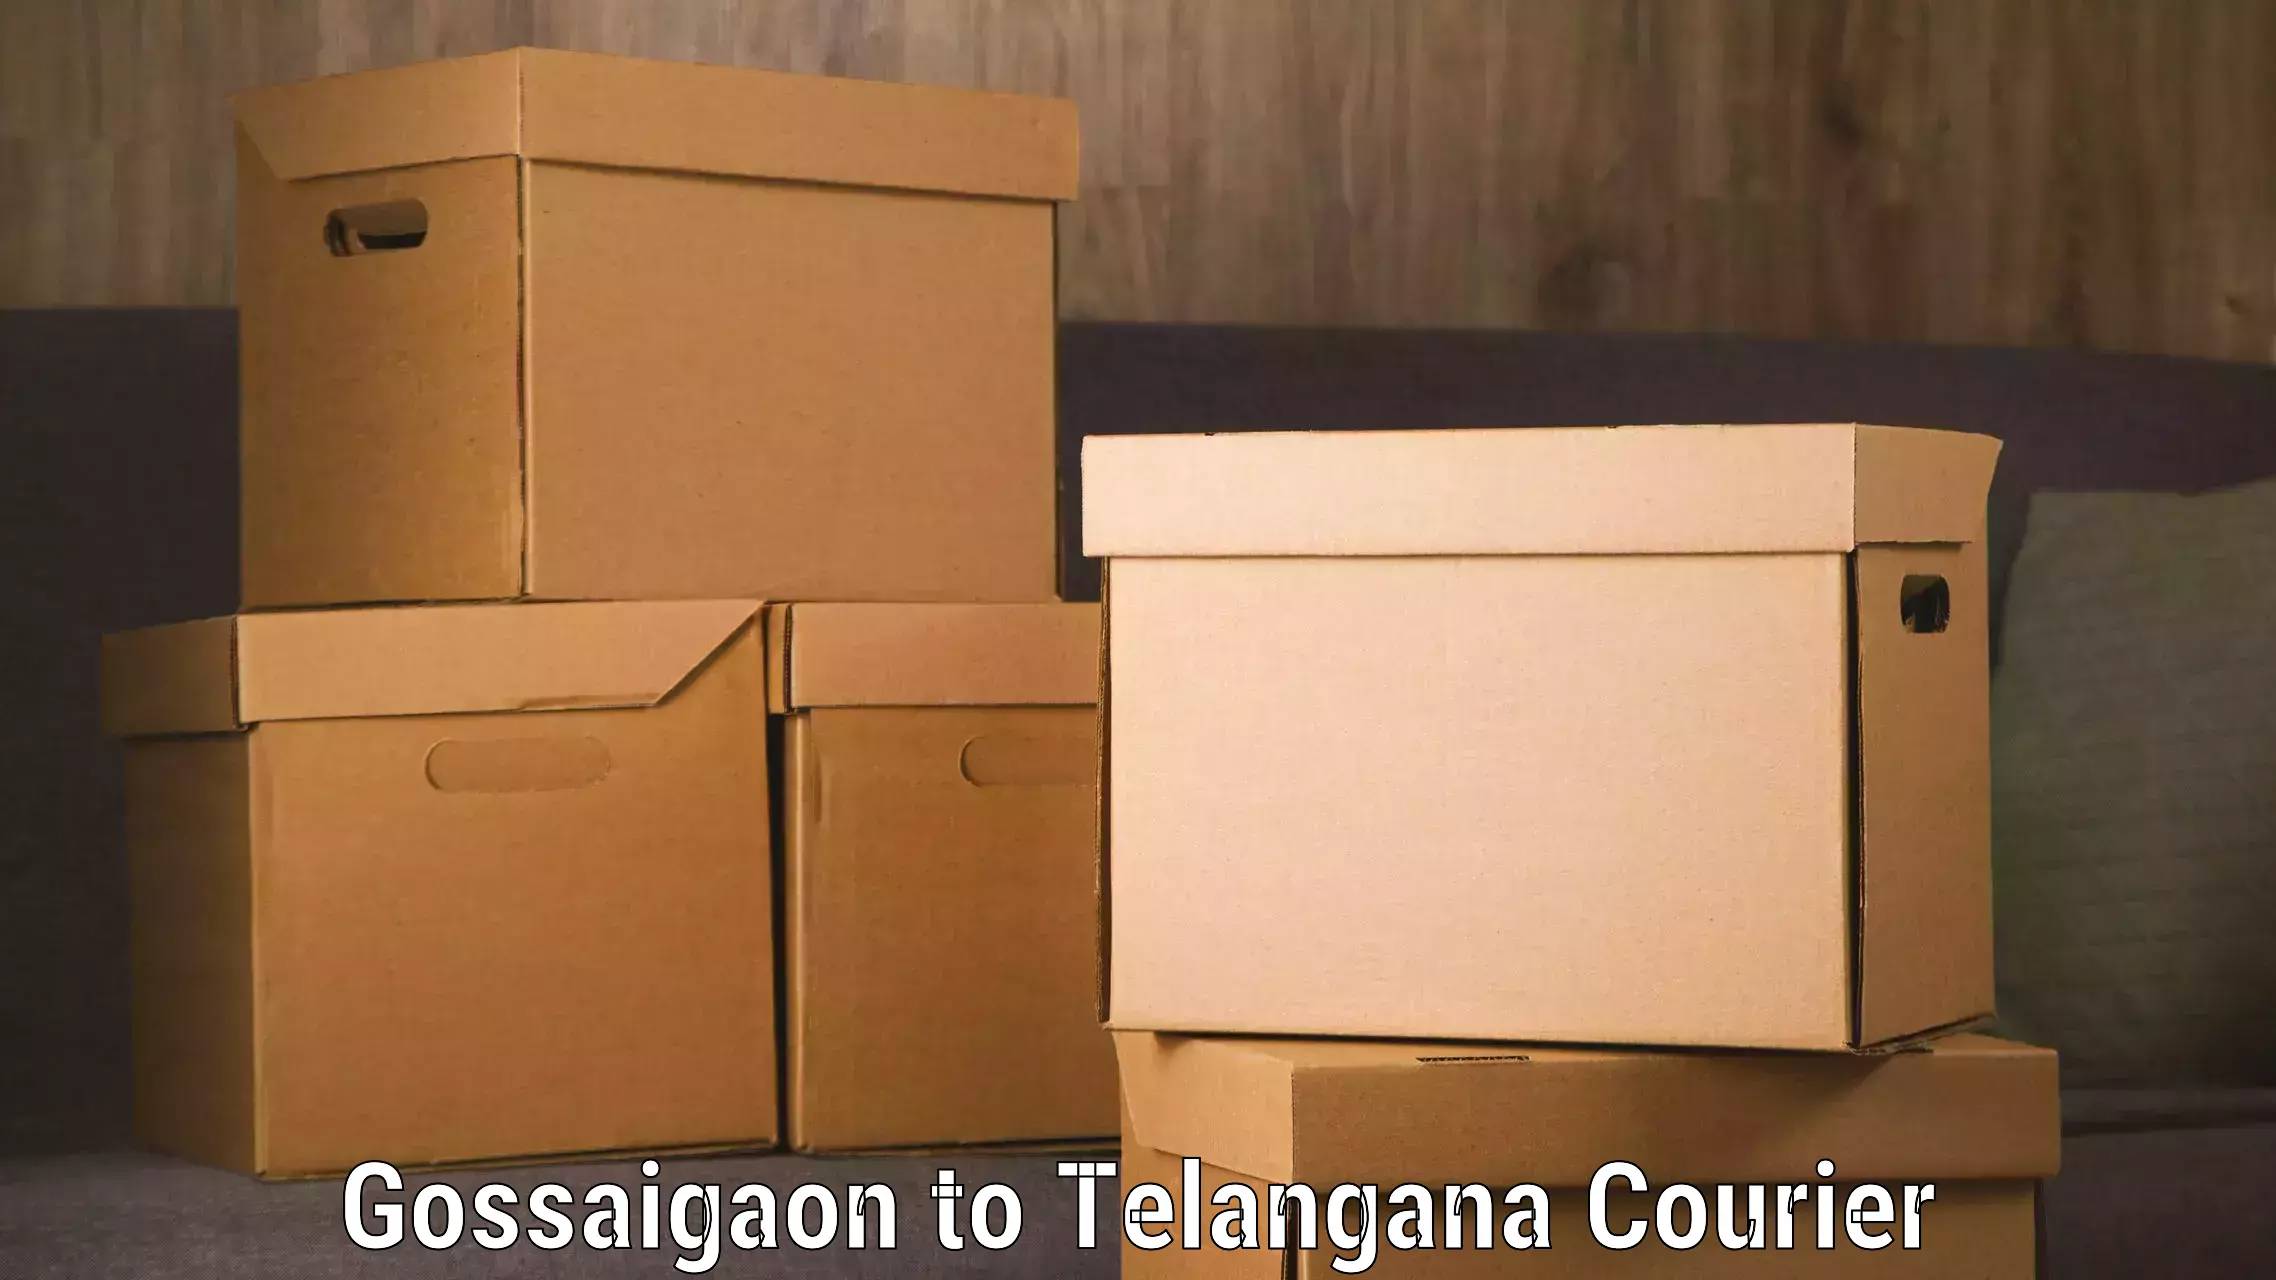 Holiday season luggage delivery Gossaigaon to Telangana